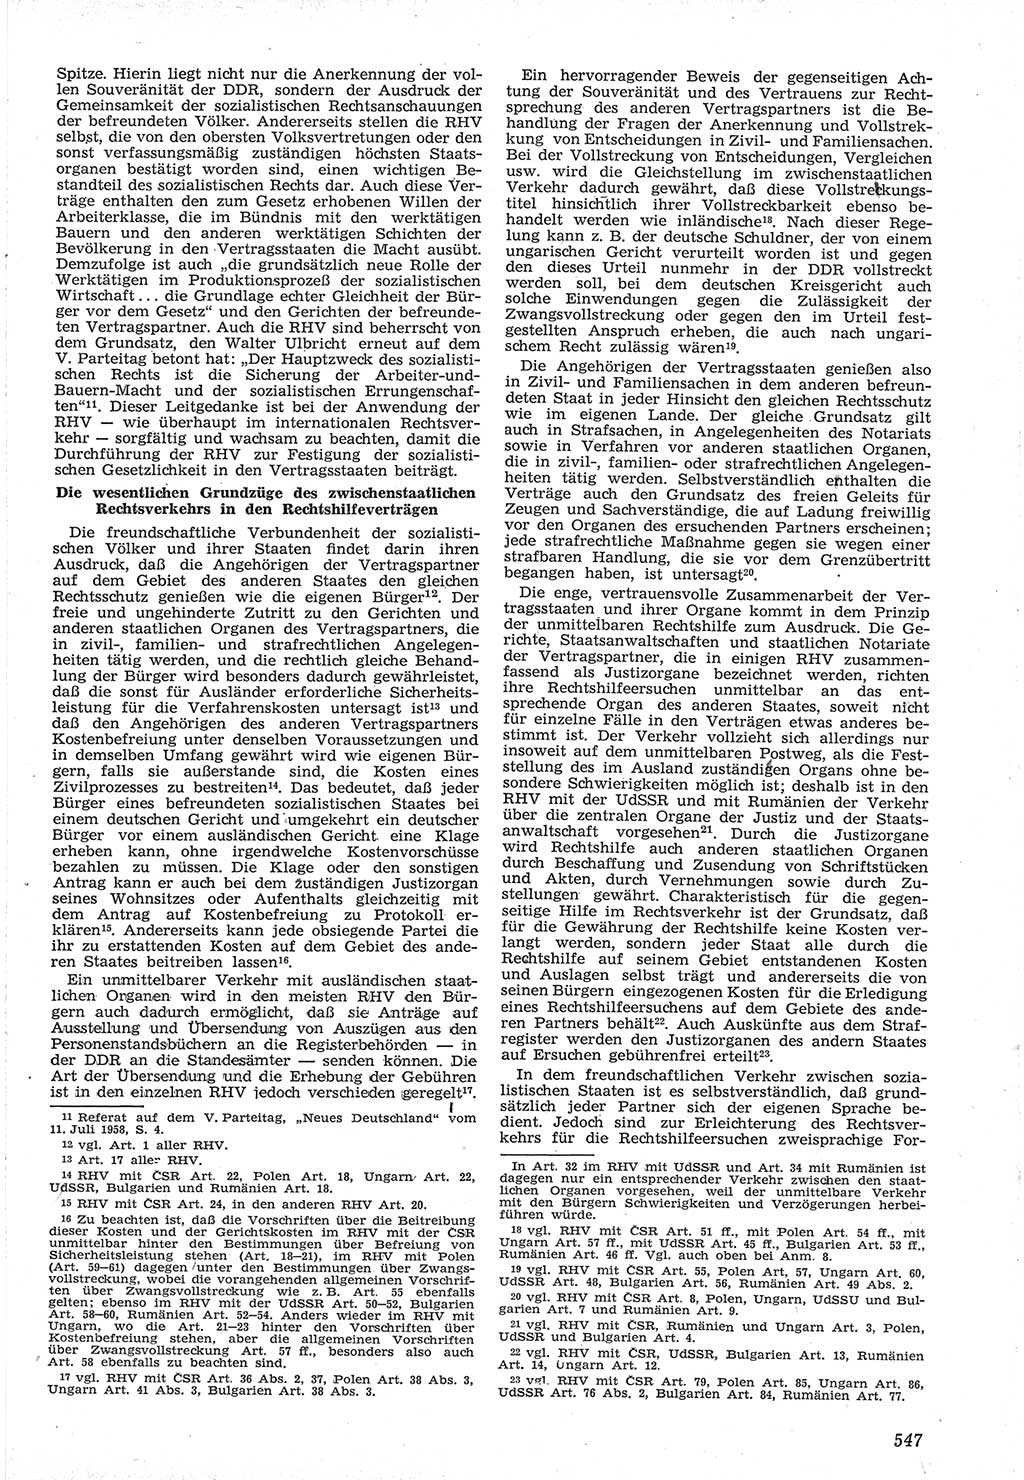 Neue Justiz (NJ), Zeitschrift für Recht und Rechtswissenschaft [Deutsche Demokratische Republik (DDR)], 12. Jahrgang 1958, Seite 547 (NJ DDR 1958, S. 547)